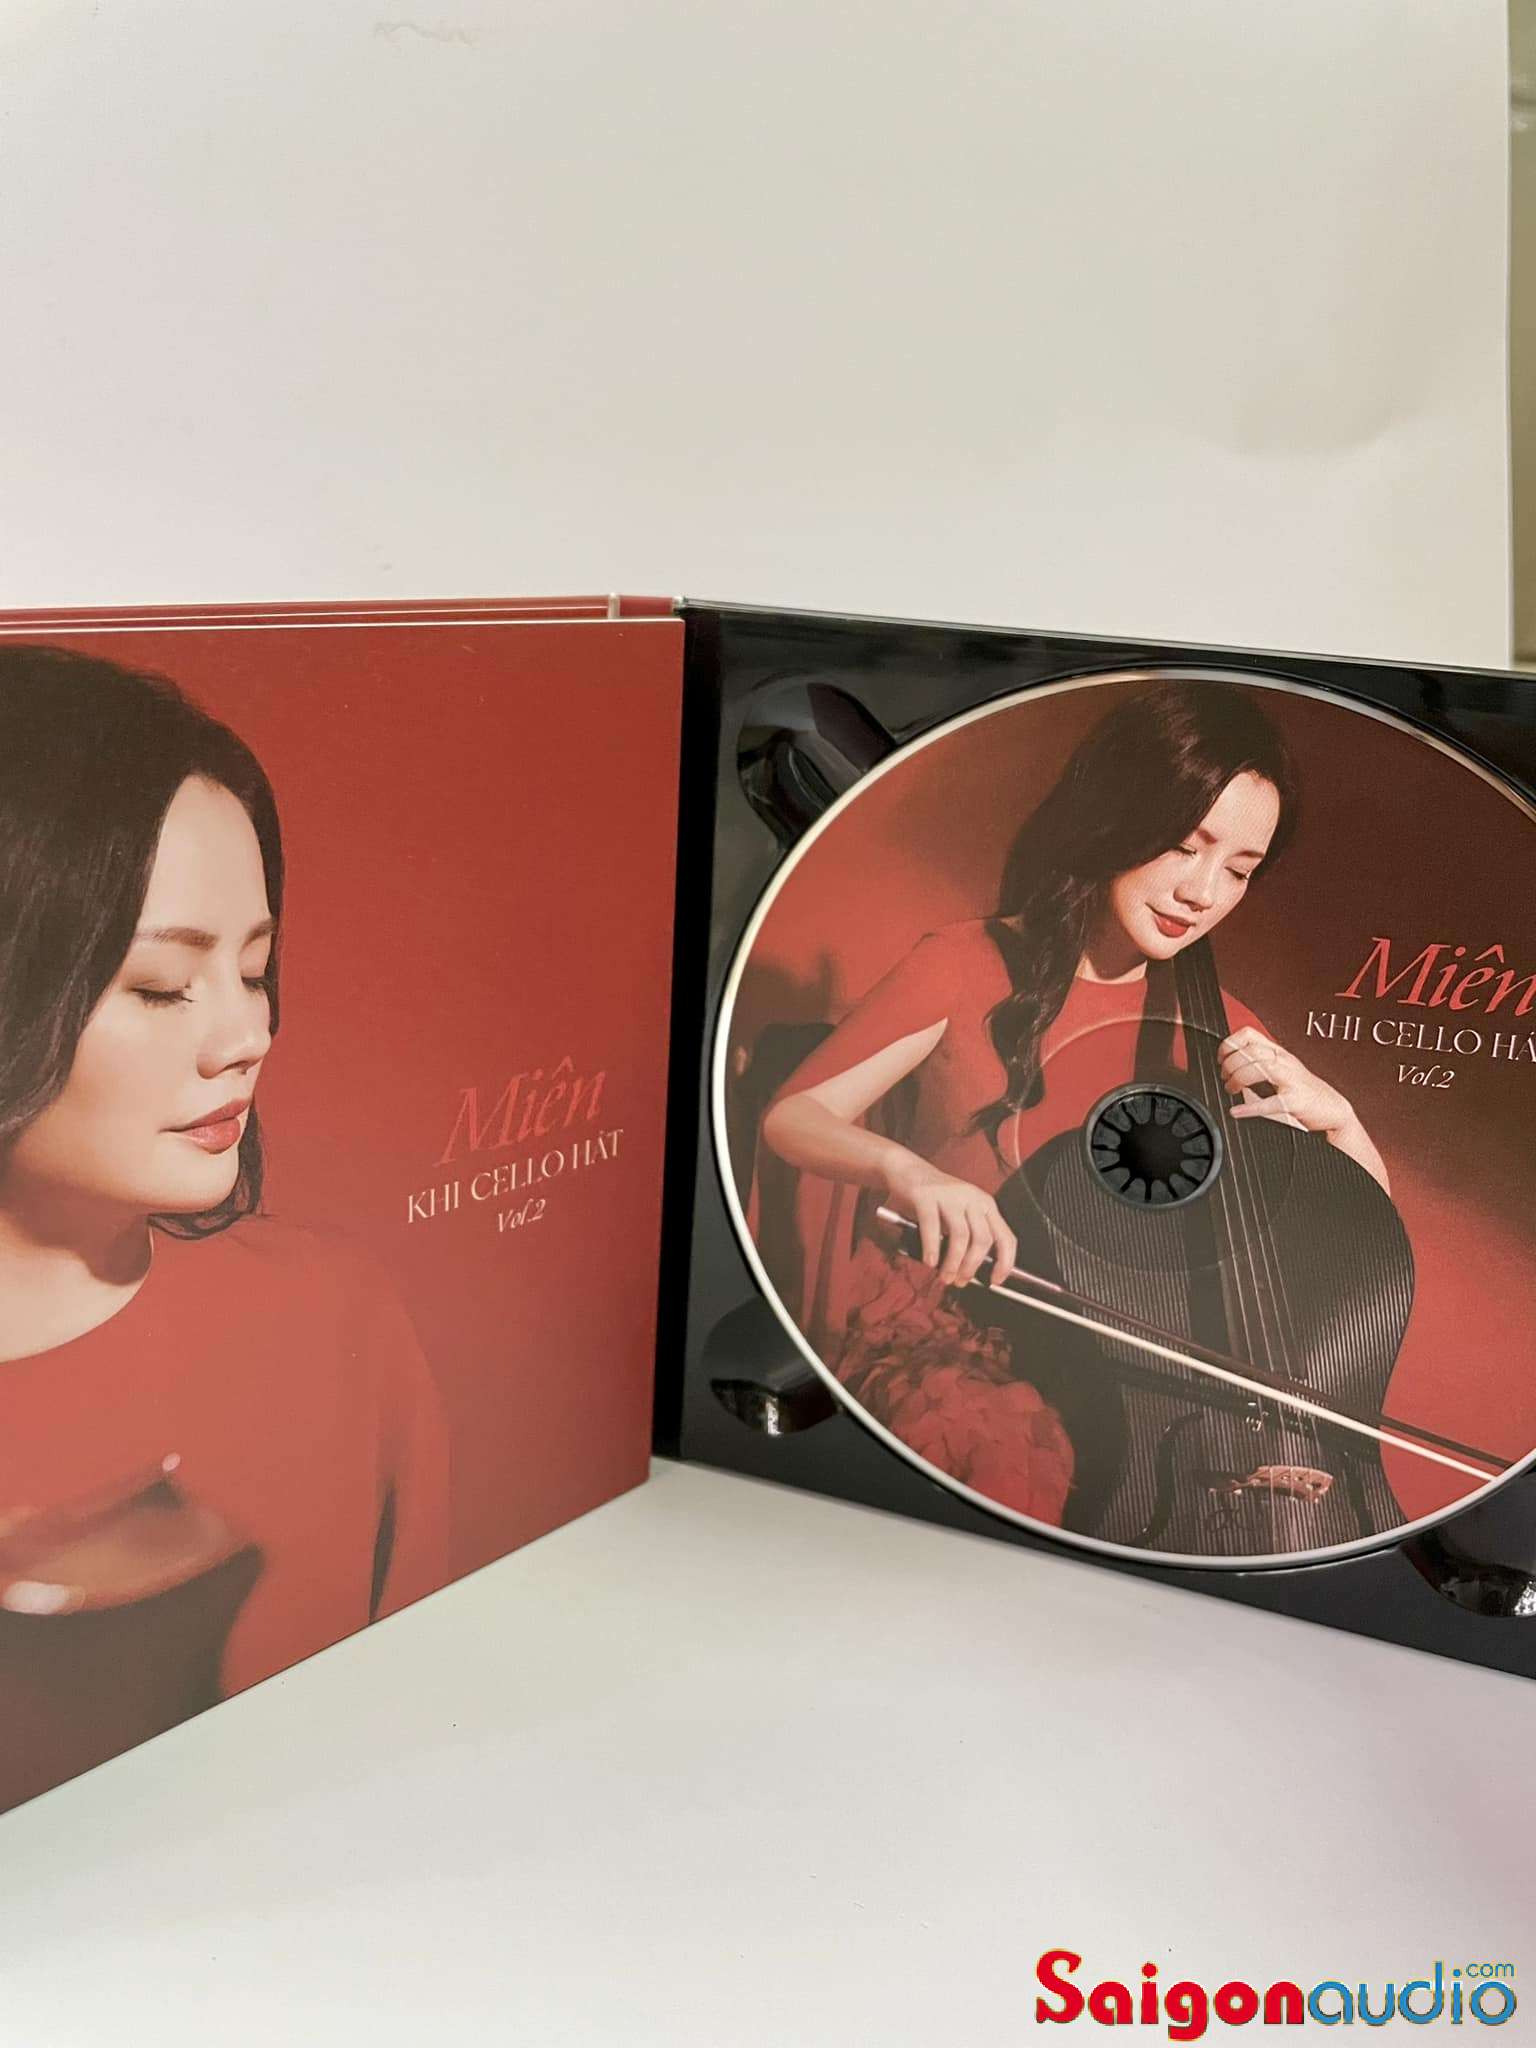 Đĩa CD gốc Hà Miên - Khi Cello Hát (Free ship khi mua 2 đĩa CD cùng hoặc khác loại)